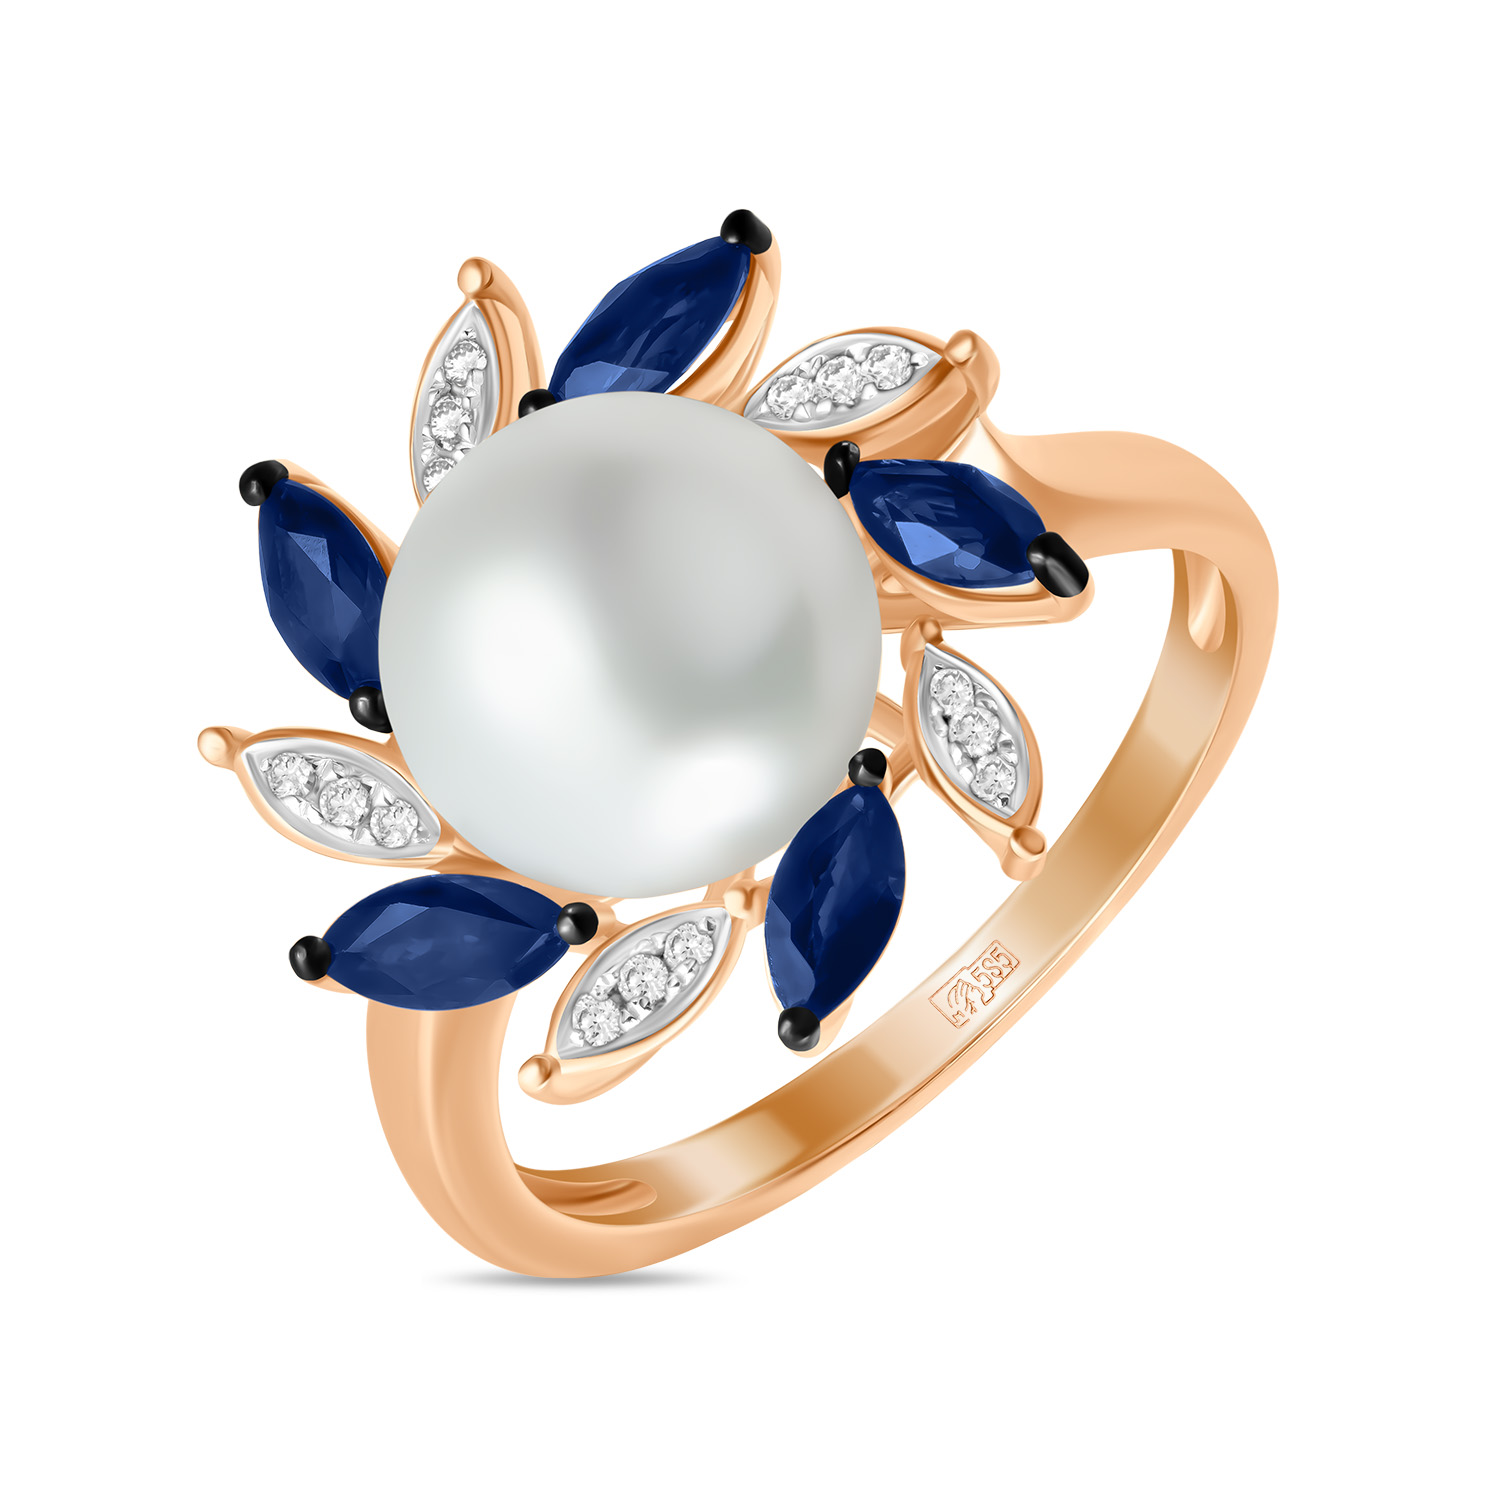 Кольца МЮЗ Золотое кольцо с бриллиантами, жемчугом и сапфирами кольца мюз золотое кольцо с аметистом жемчугом и сапфирами